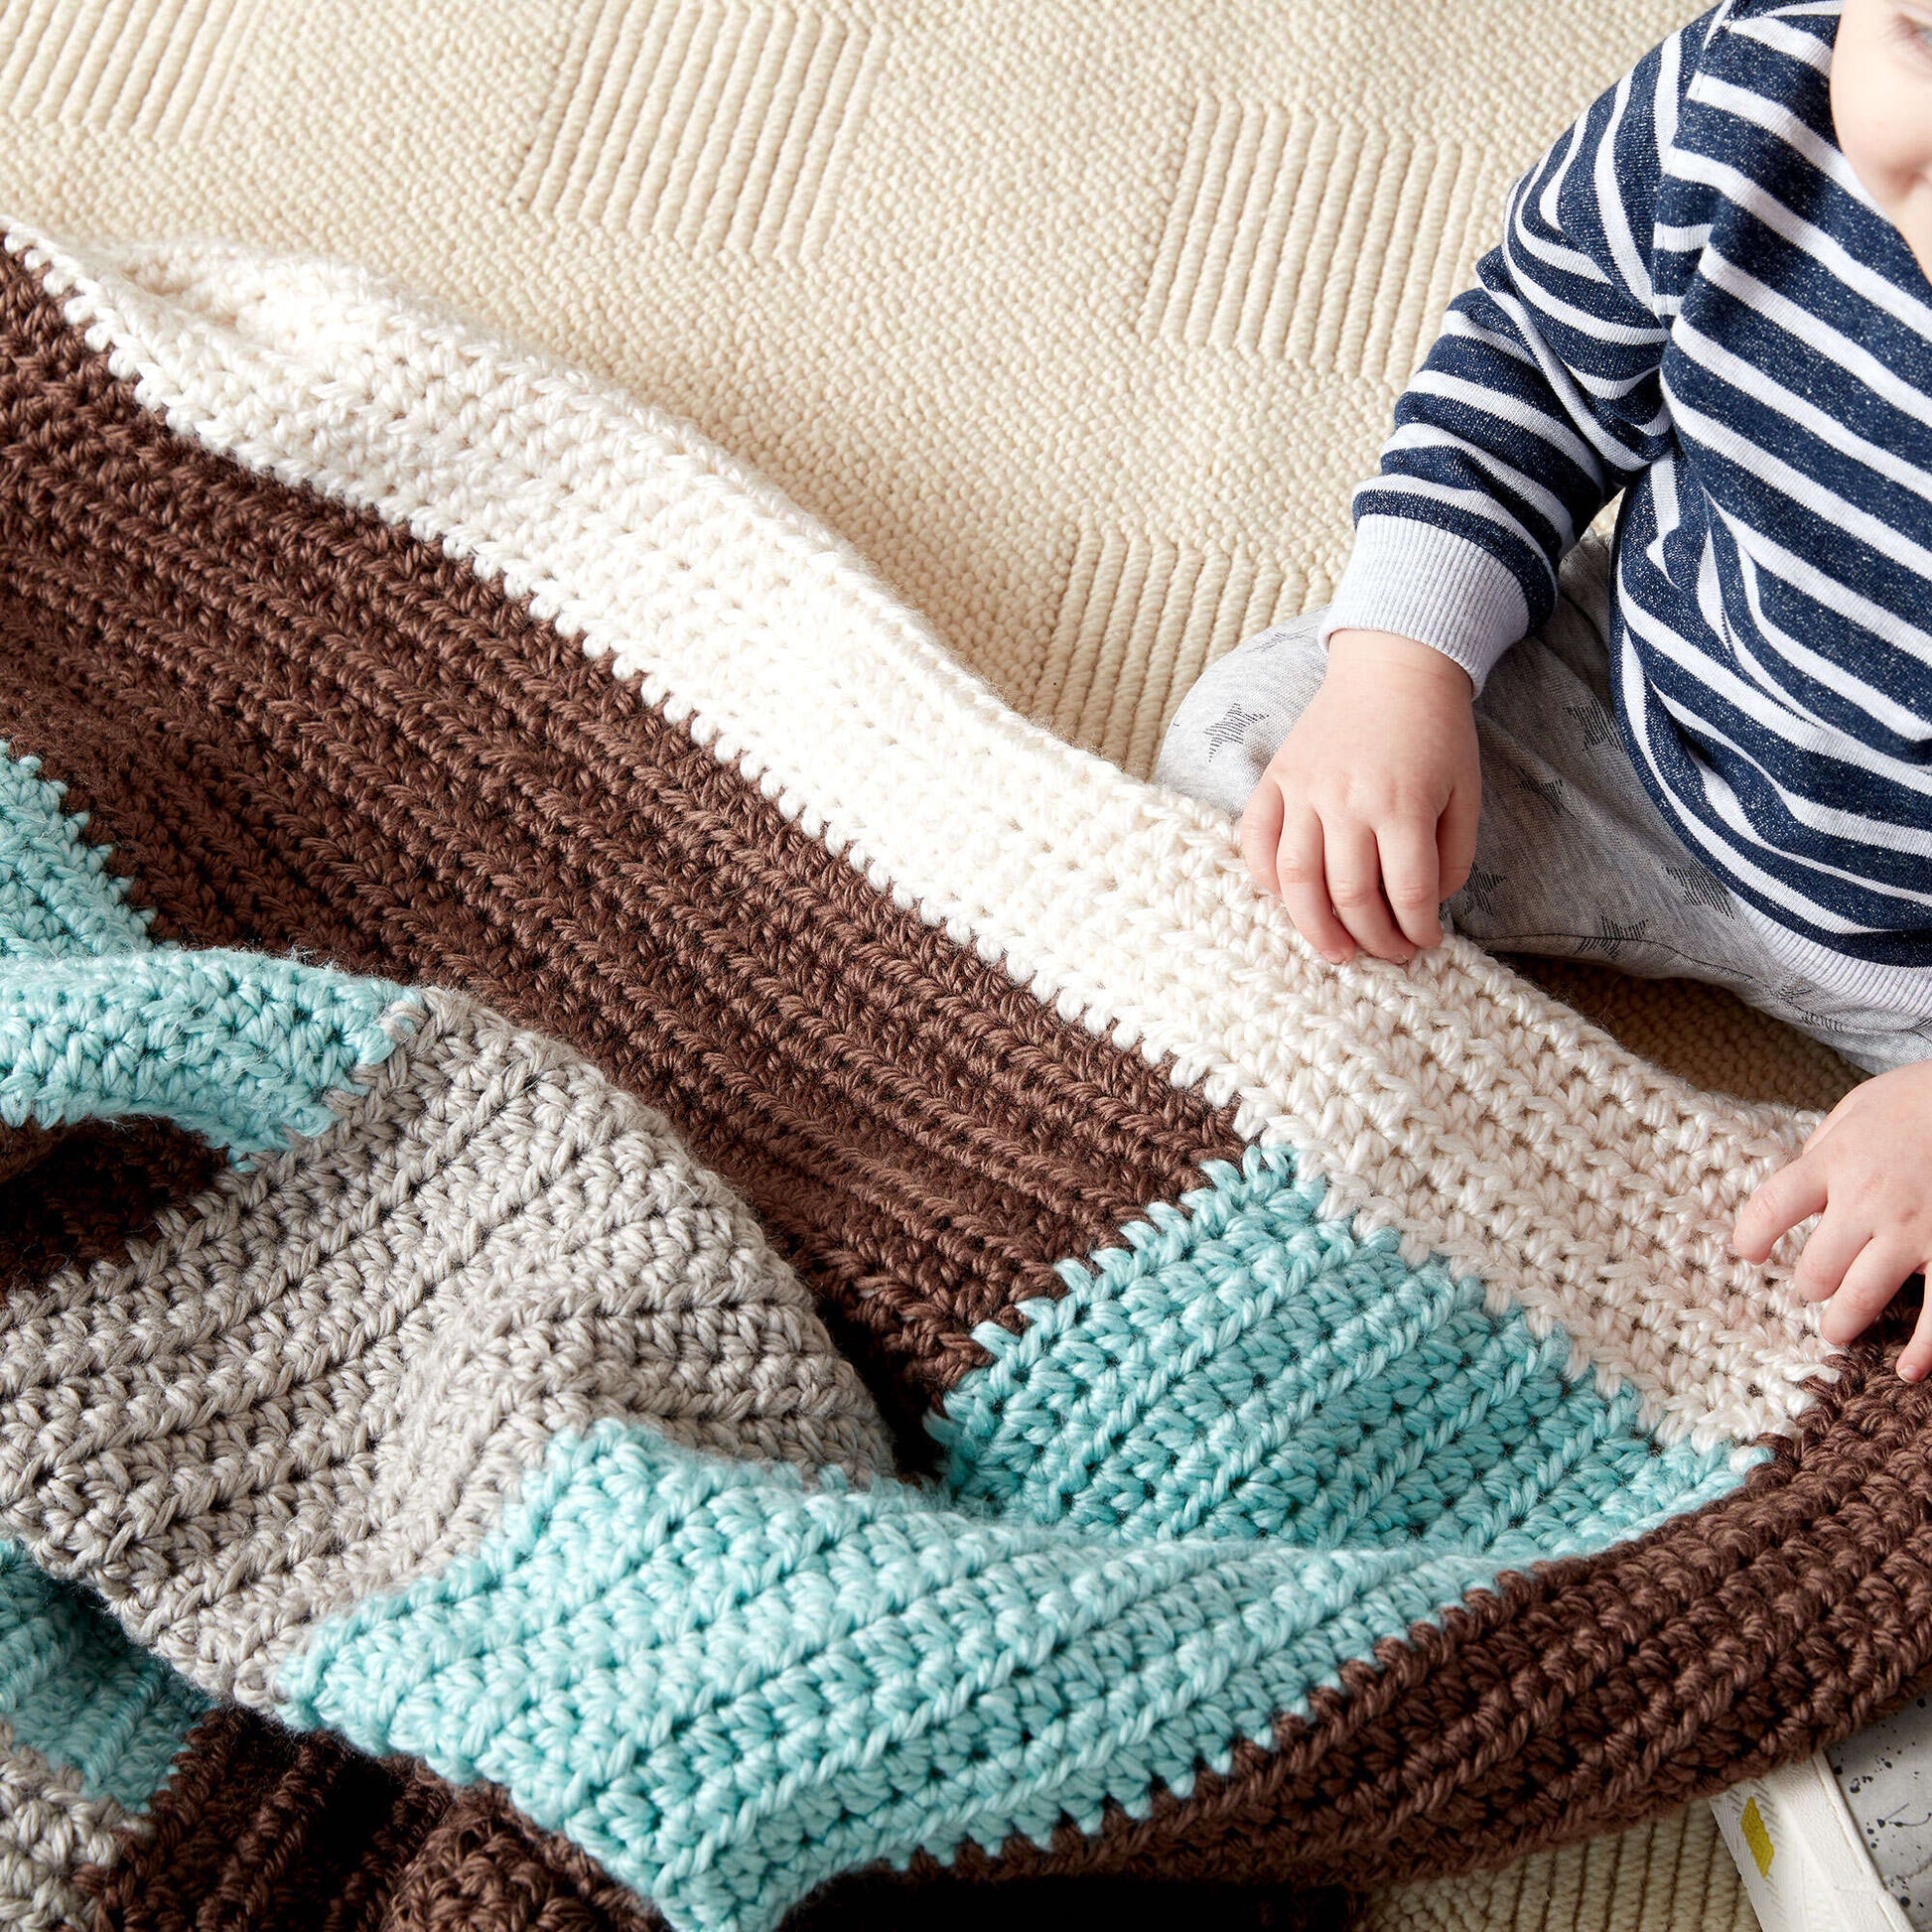 Log Cabin Blanket Crochet Kit